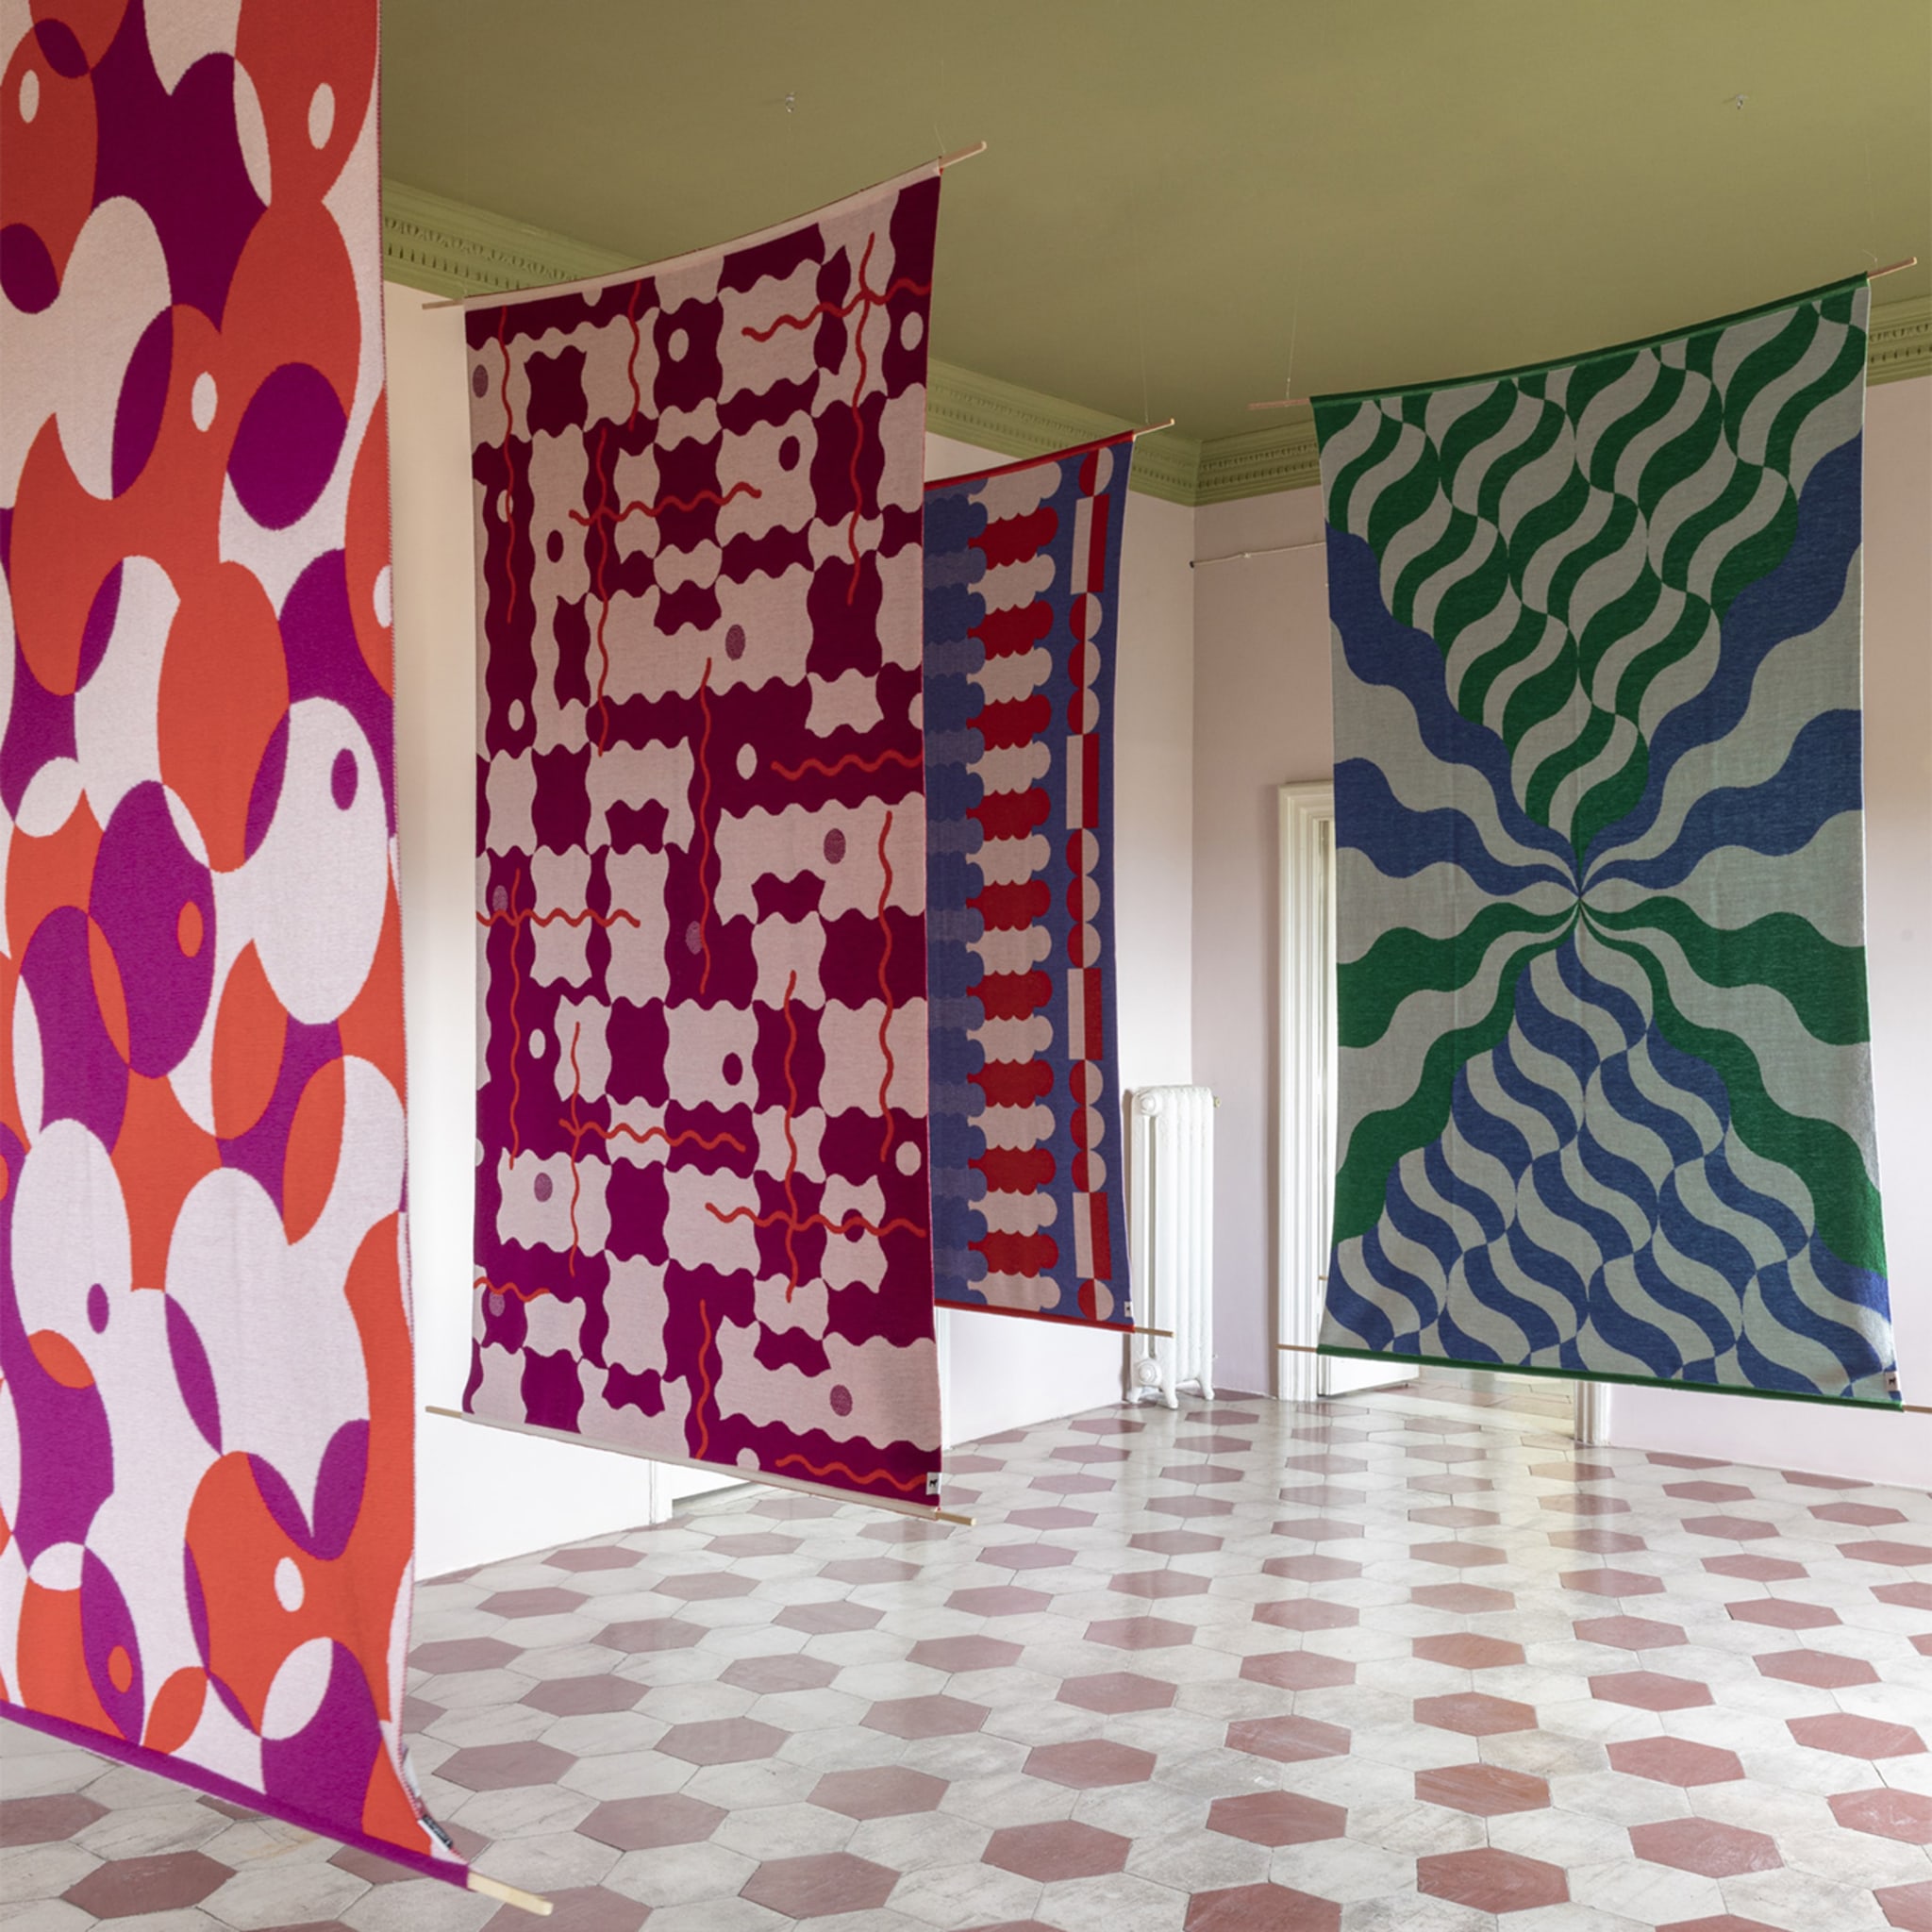 Trip 5 Polychrome Blanket/Tapestry by Serena Confalonieri - Alternative view 1